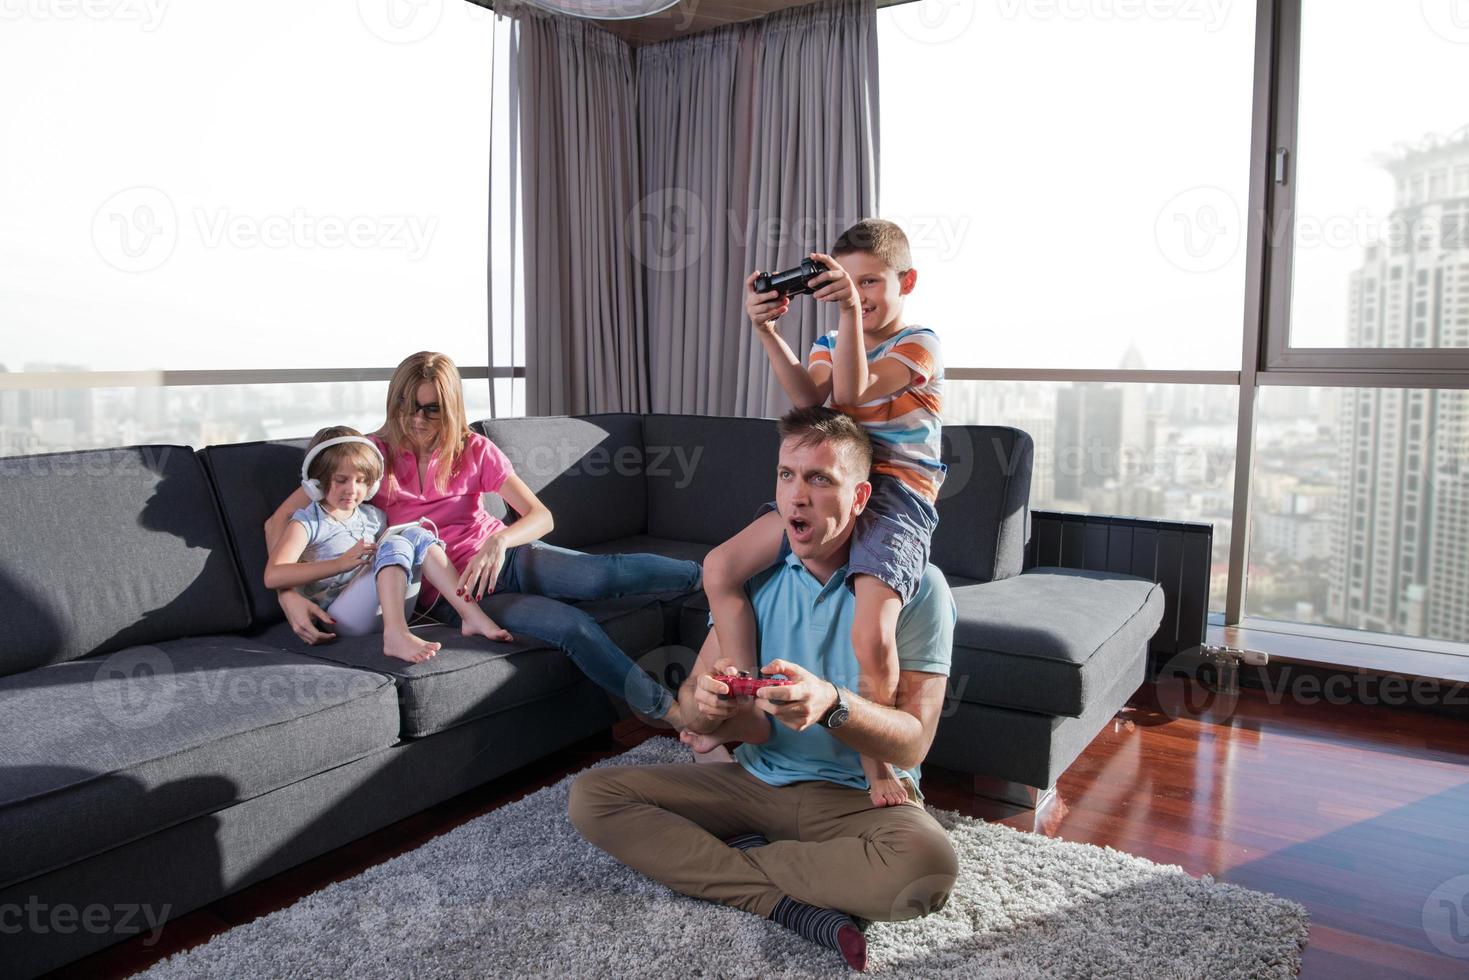 gelukkig familie spelen een video spel foto